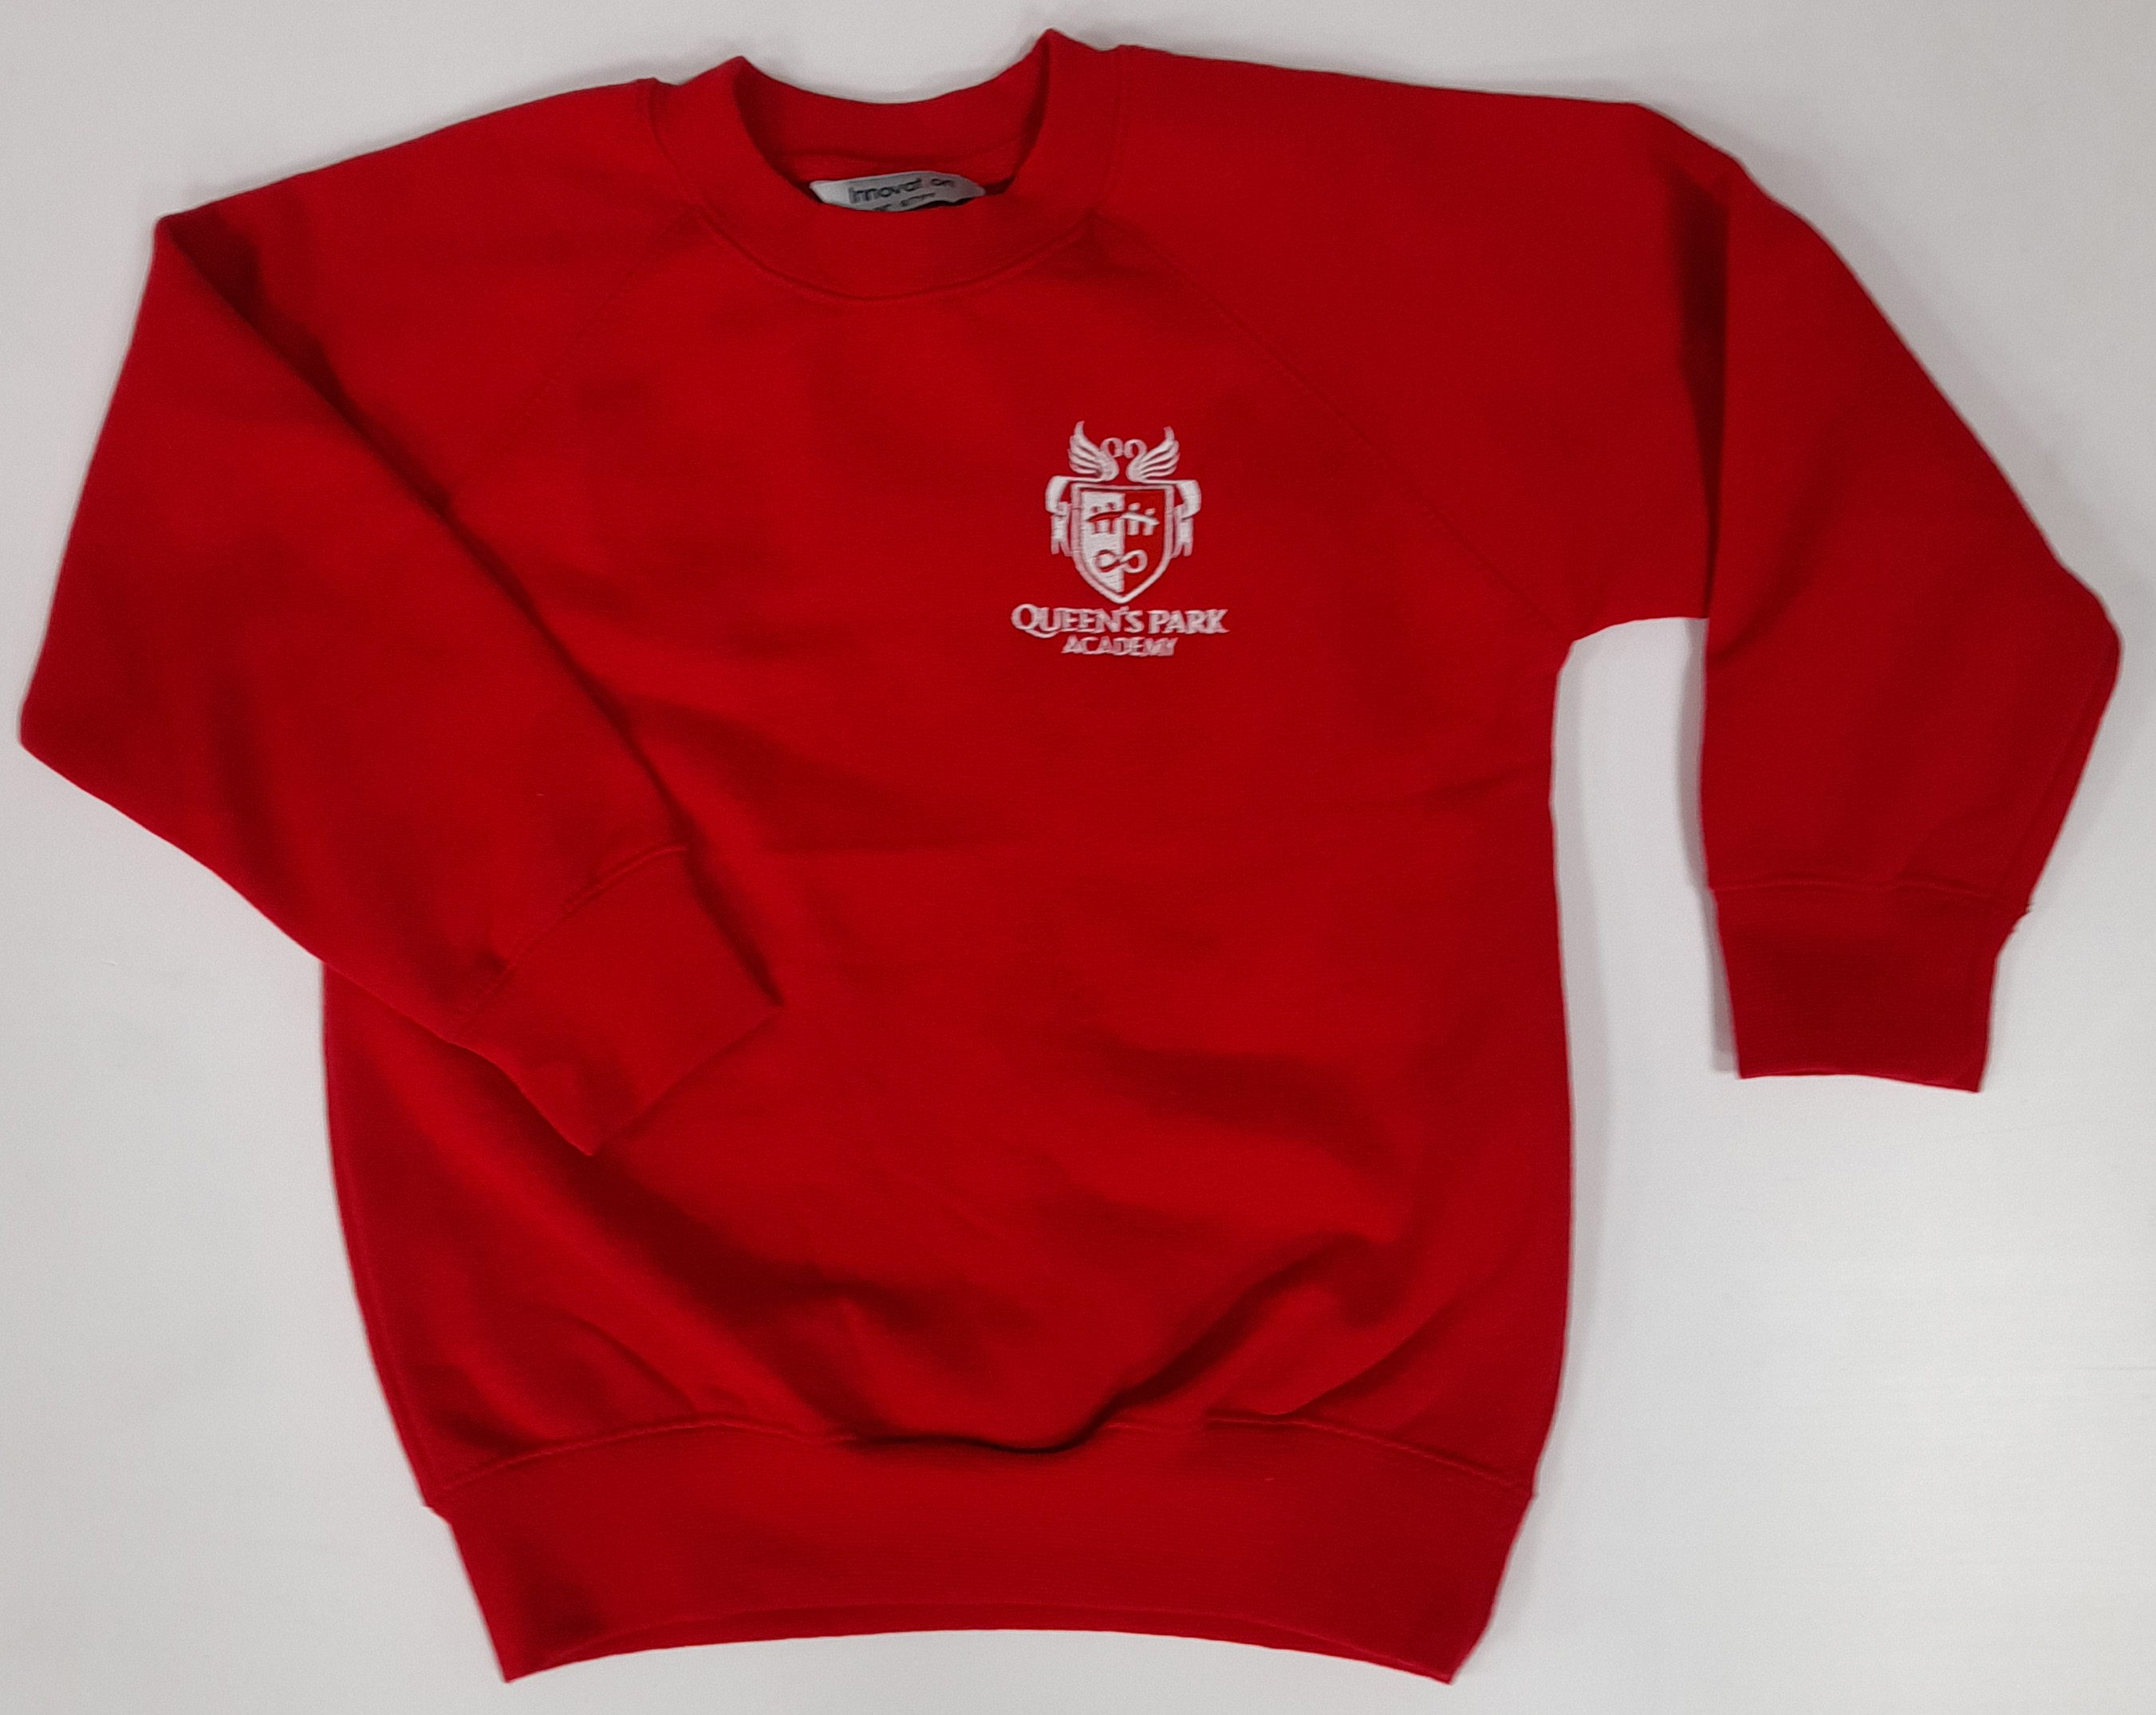 Queens Park Academy Sweatshirt (Red)